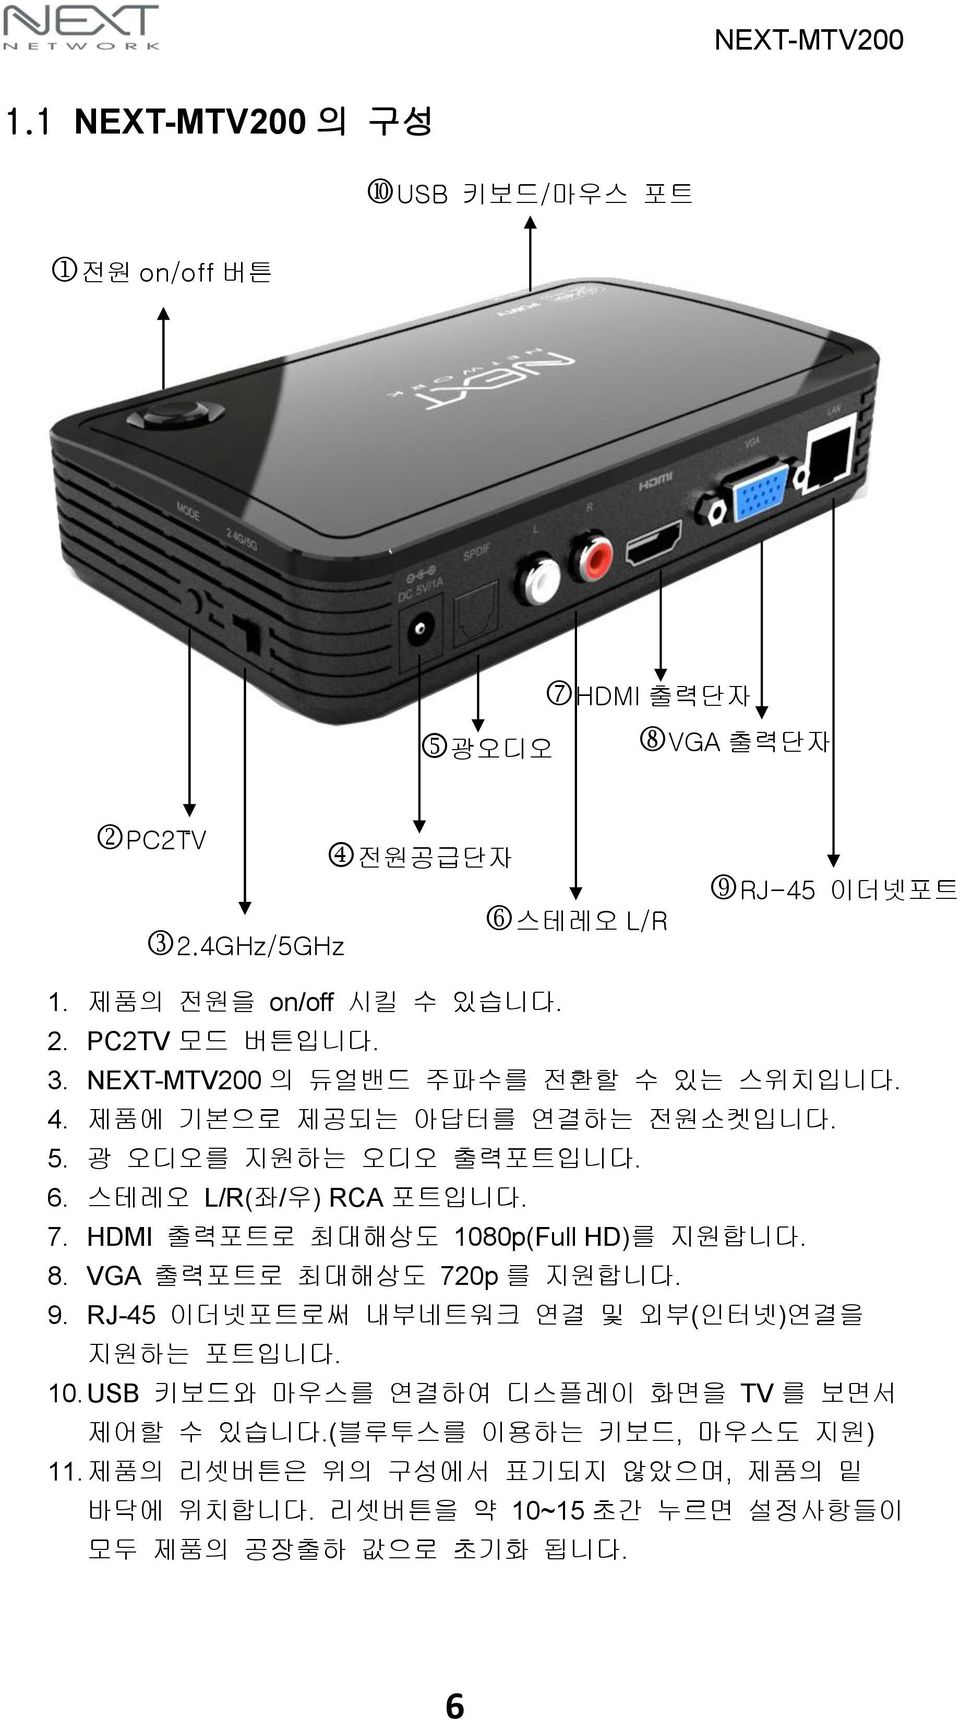 HDMI 출력포트로 최대해상도 1080p(Full HD)를 지원합니다. 8. VGA 출력포트로 최대해상도 720p 를 지원합니다. 9. RJ-45 이더넷포트로써 내부네트워크 연결 및 외부(인터넷)연결을 지원하는 포트입니다. 10. USB 키보드와 마우스를 연결하여 디스플레이 화면을 TV 를 보면서 제어할 수 있습니다.